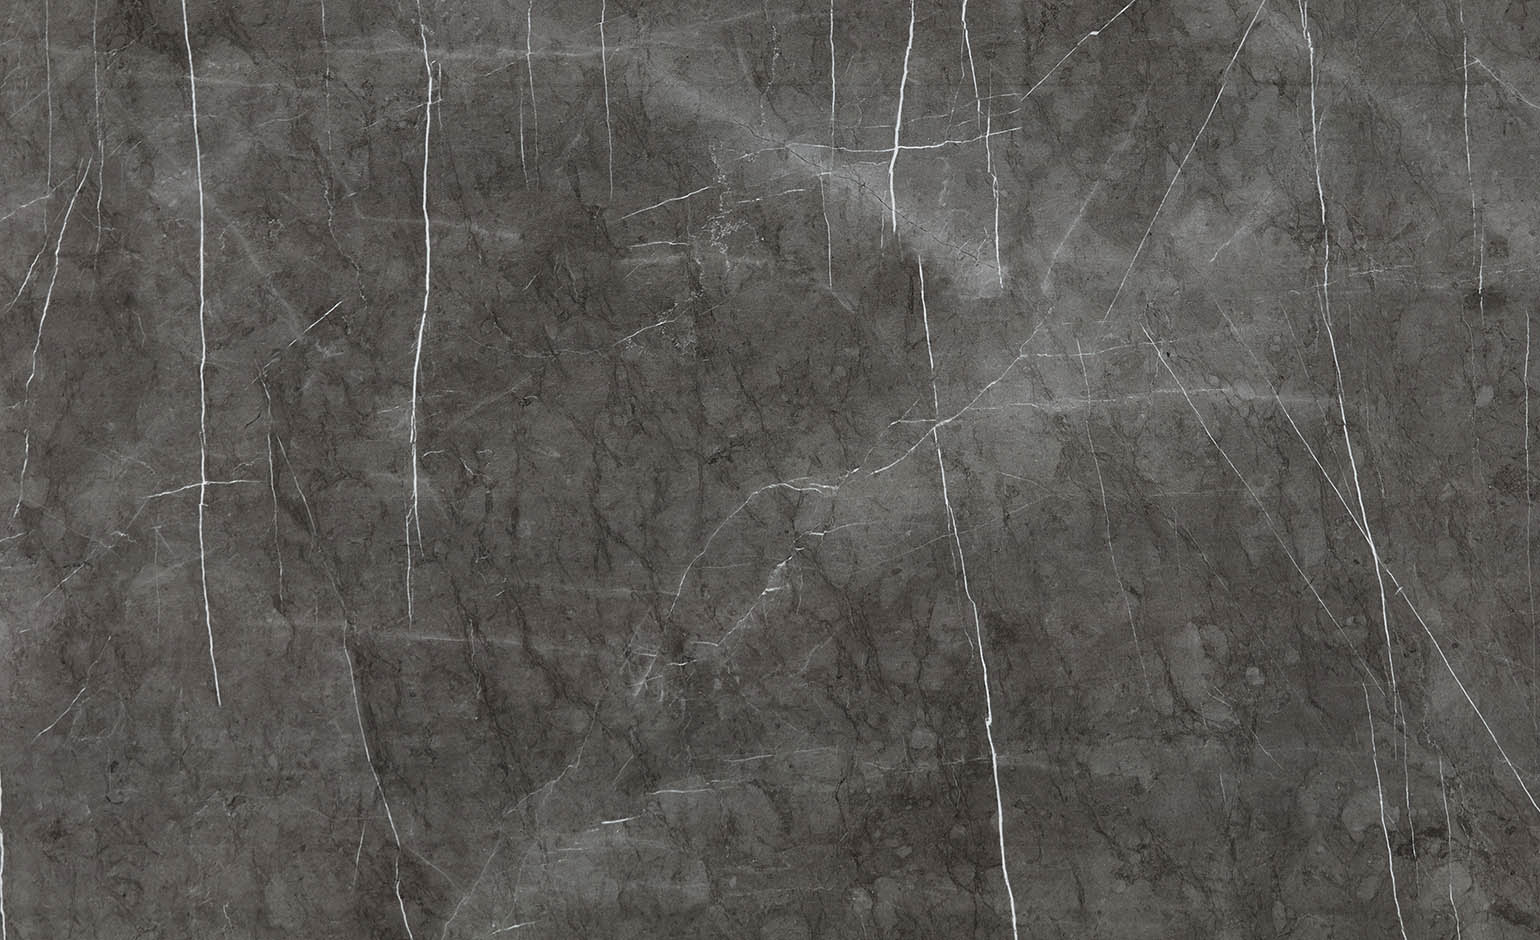 Revêtement minéral composite CERAMIN TILES SE, brun, dalle 120.20 x 255.00 cm